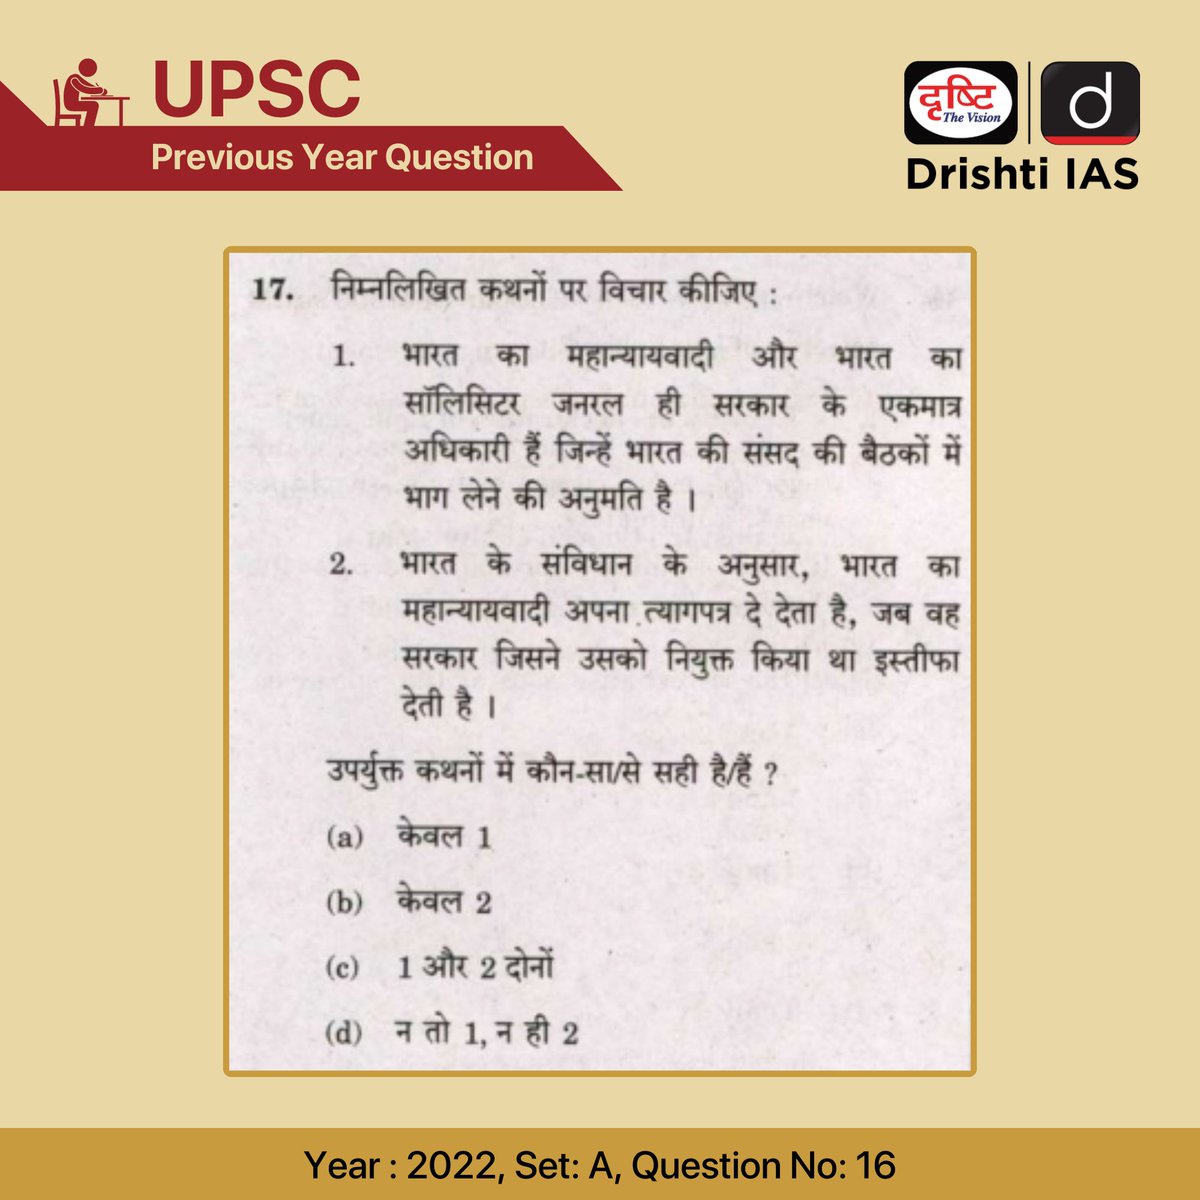 सिविल सेवा प्रारंभिक परीक्षा- 2022 

हम इस प्रश्न का सही उत्तर अगले दिन कमेंट बॉक्स में पिन करेंगे।

#UPSC #IAS #PYQ #AttorneyGeneral #SolicitorGeneral #Constitution #PreviousYearQuestion #DrishtiIAS #DrishtiPCS